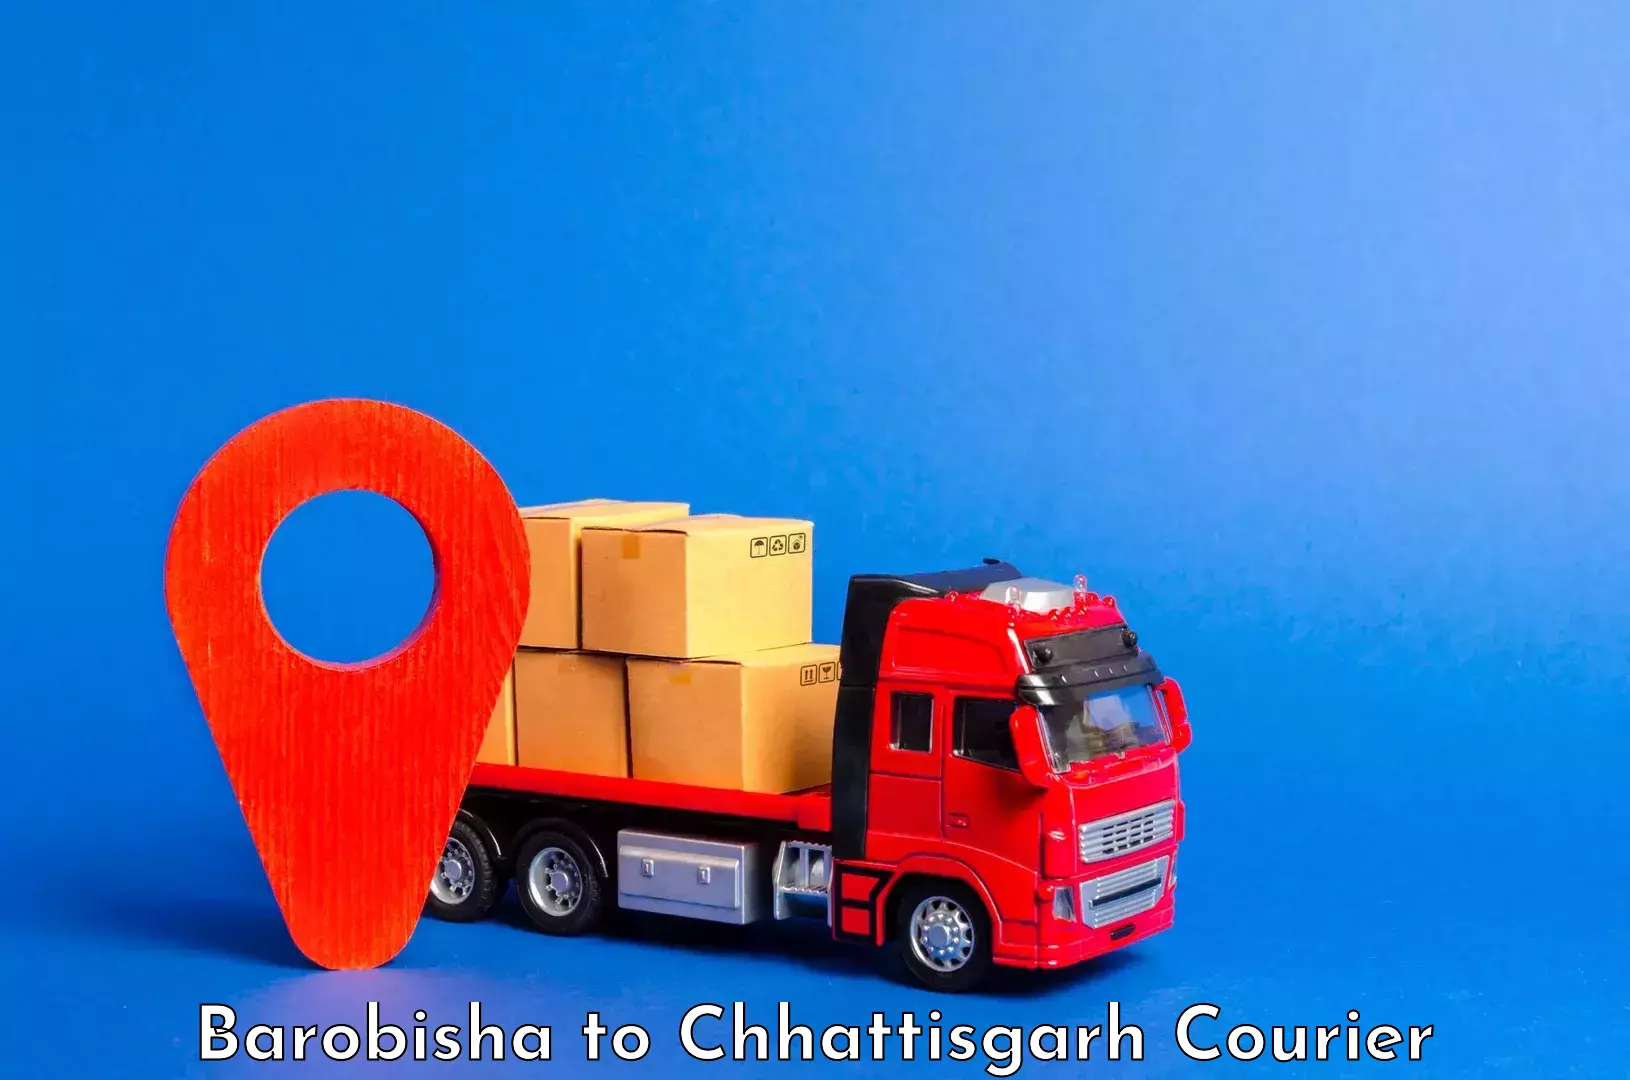 Luggage shipment specialists Barobisha to Kawardha